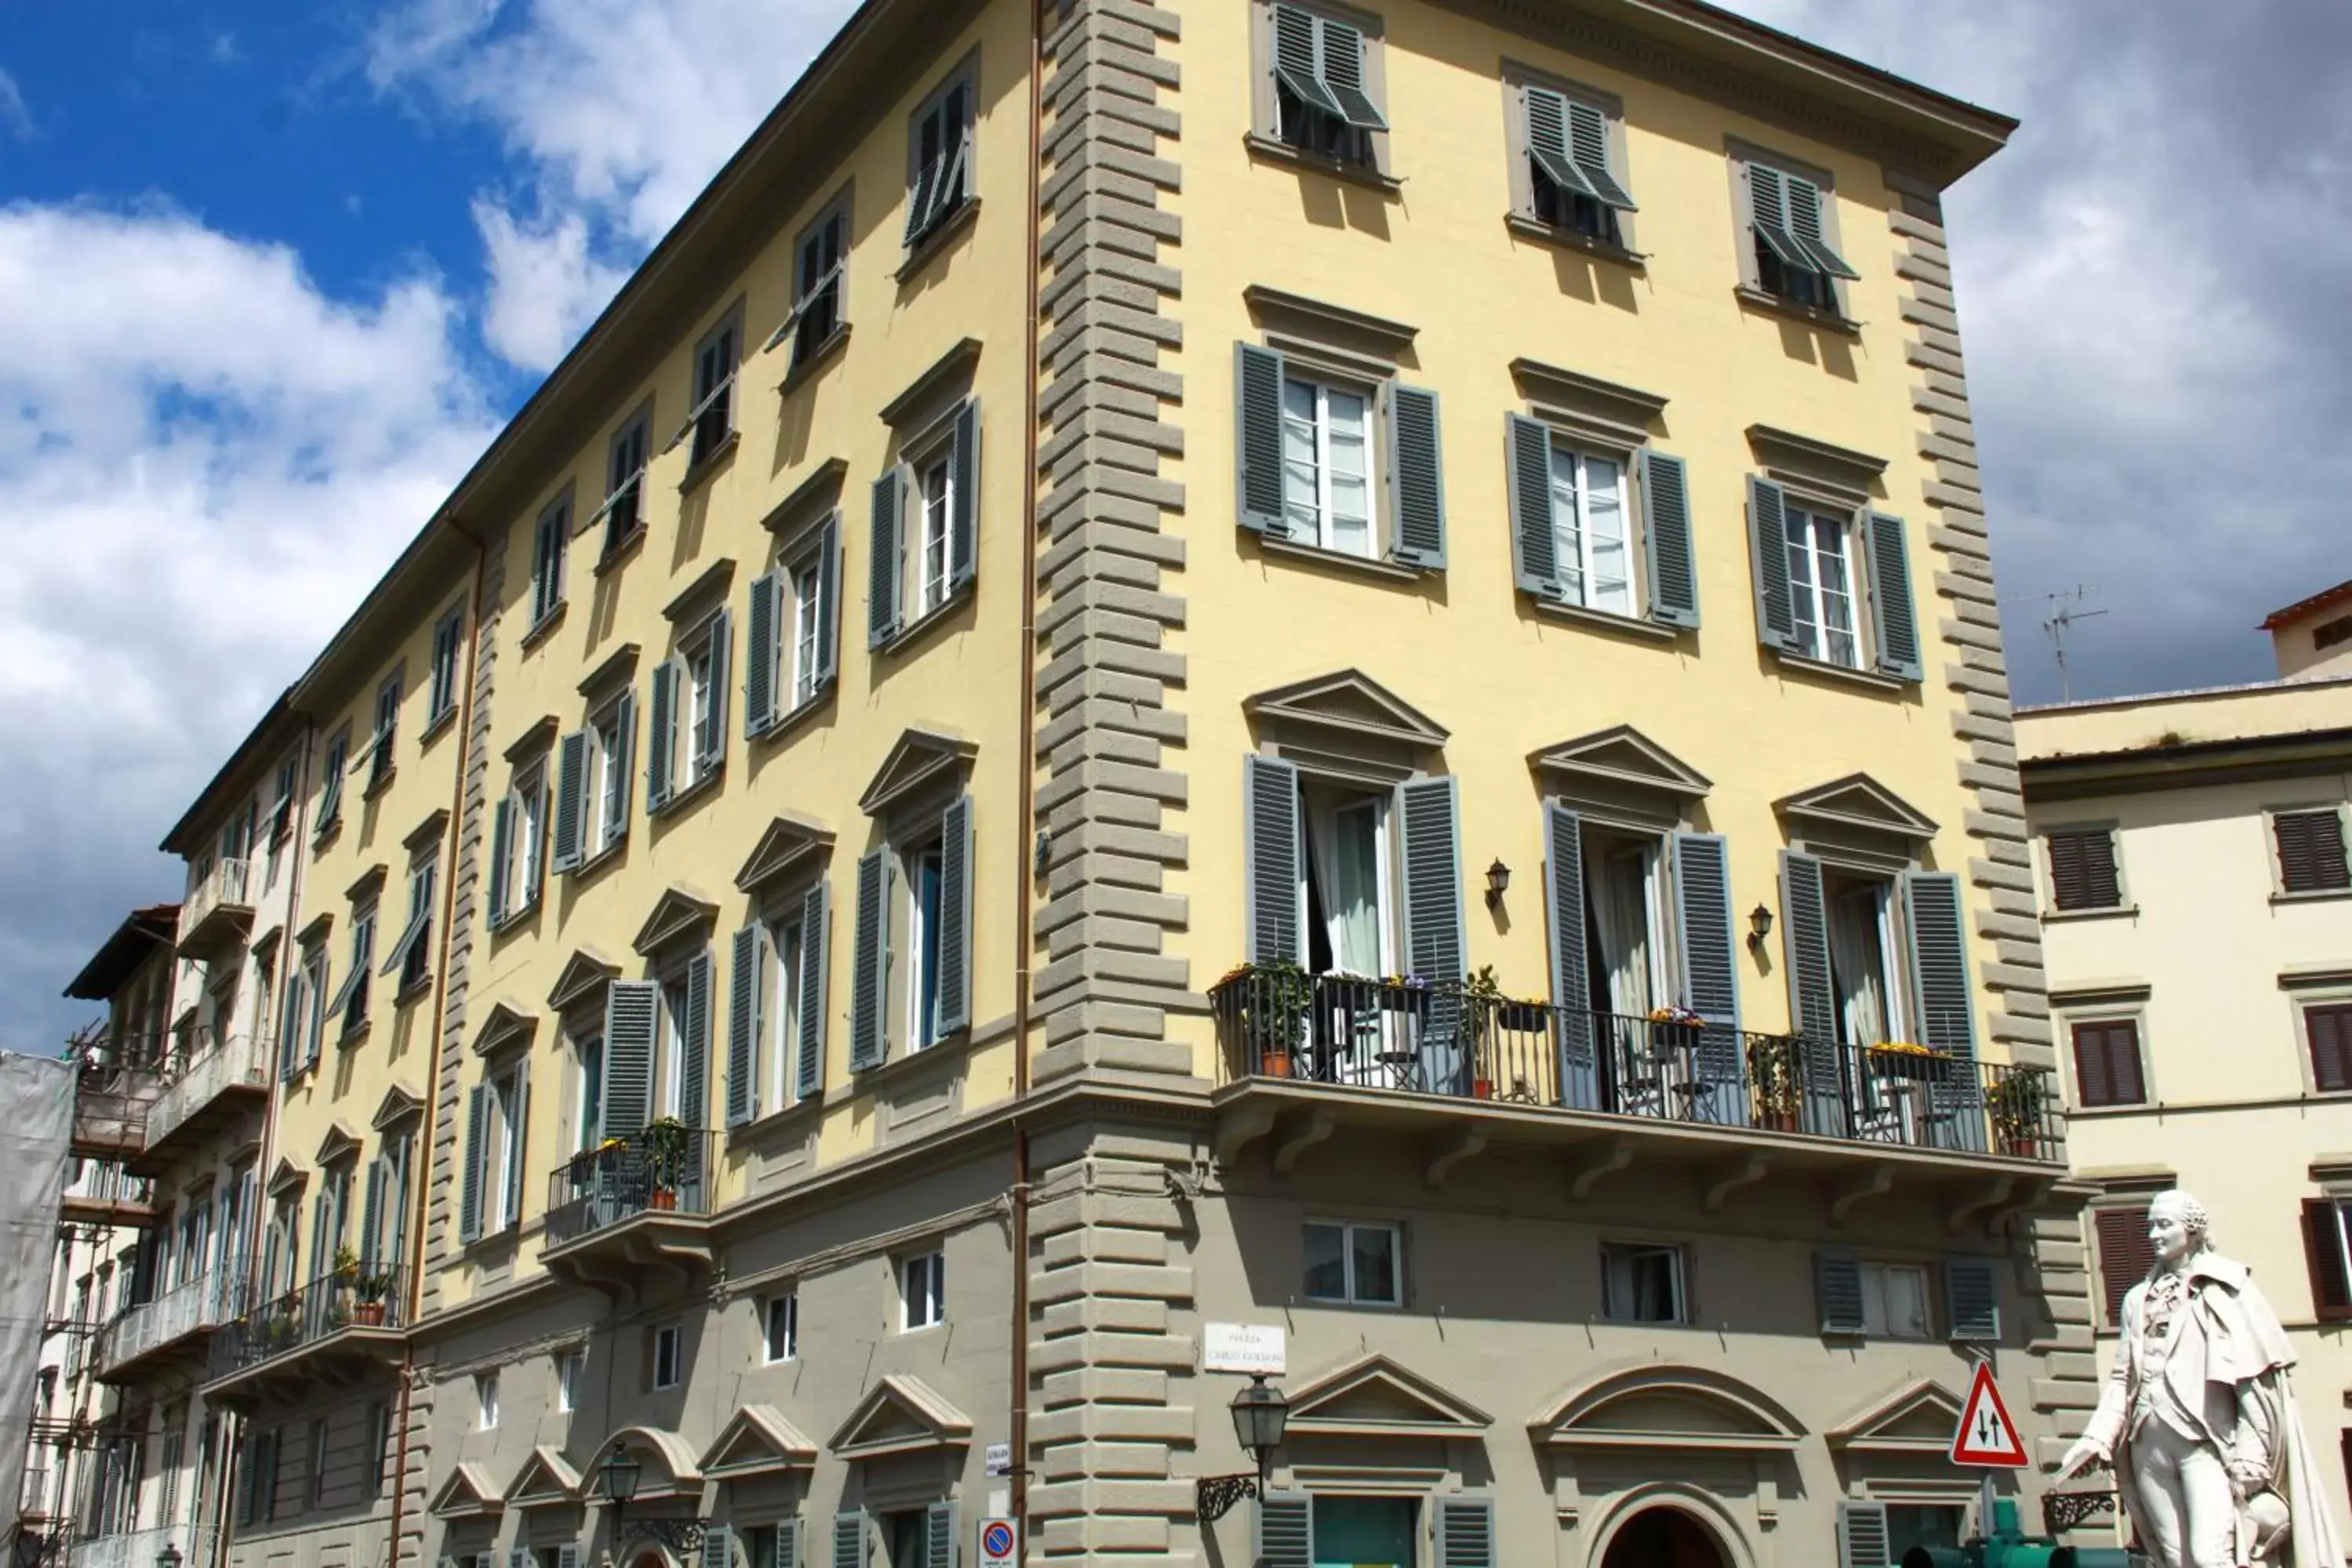 Facade/entrance, Property Building in Residenza Vespucci